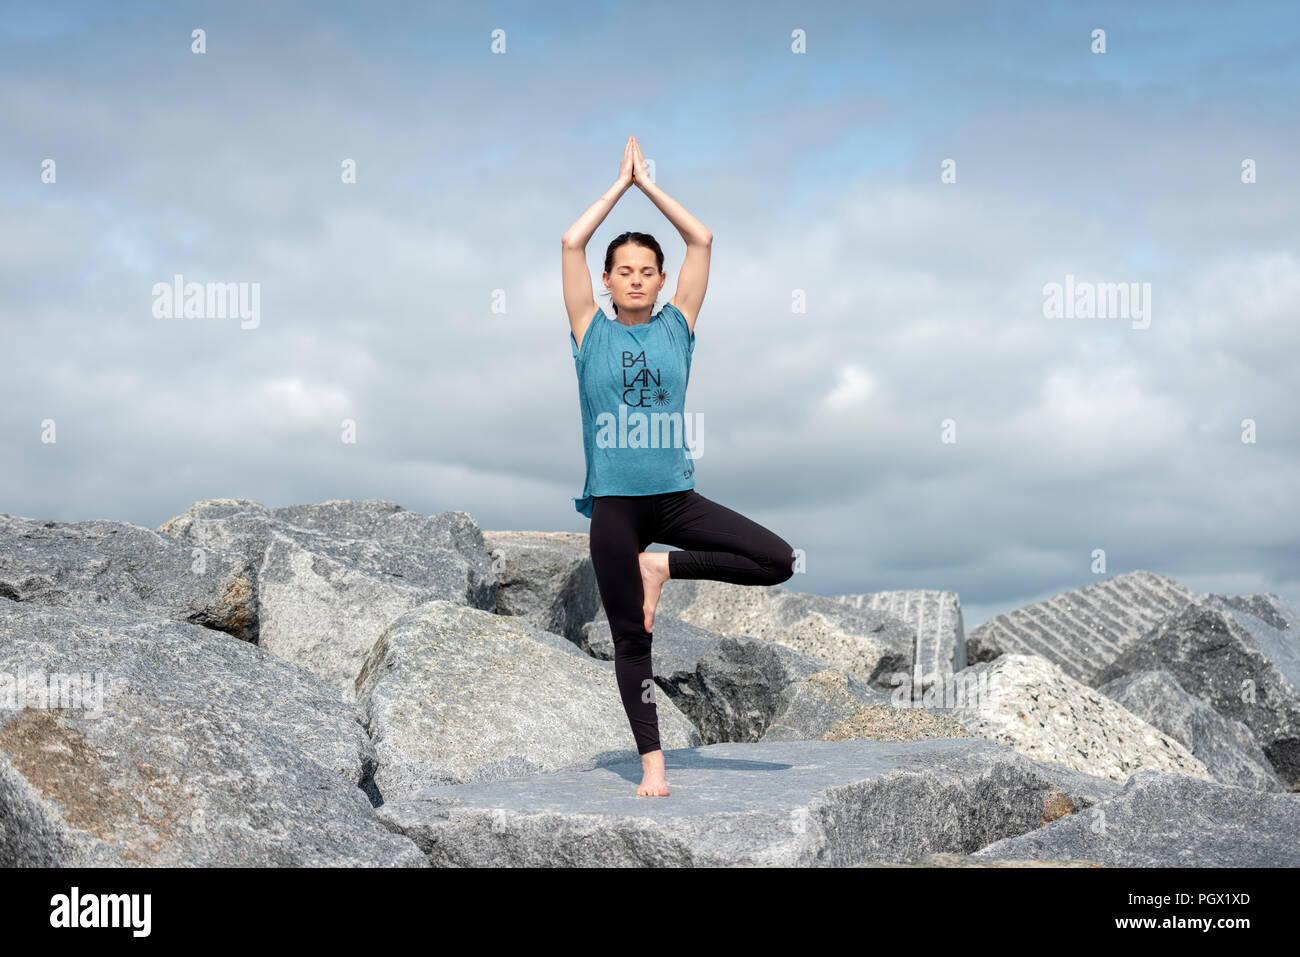 Woman doing yoga, posture de l'arbre, portant un tshirt "d'équilibre" slogan. Banque D'Images